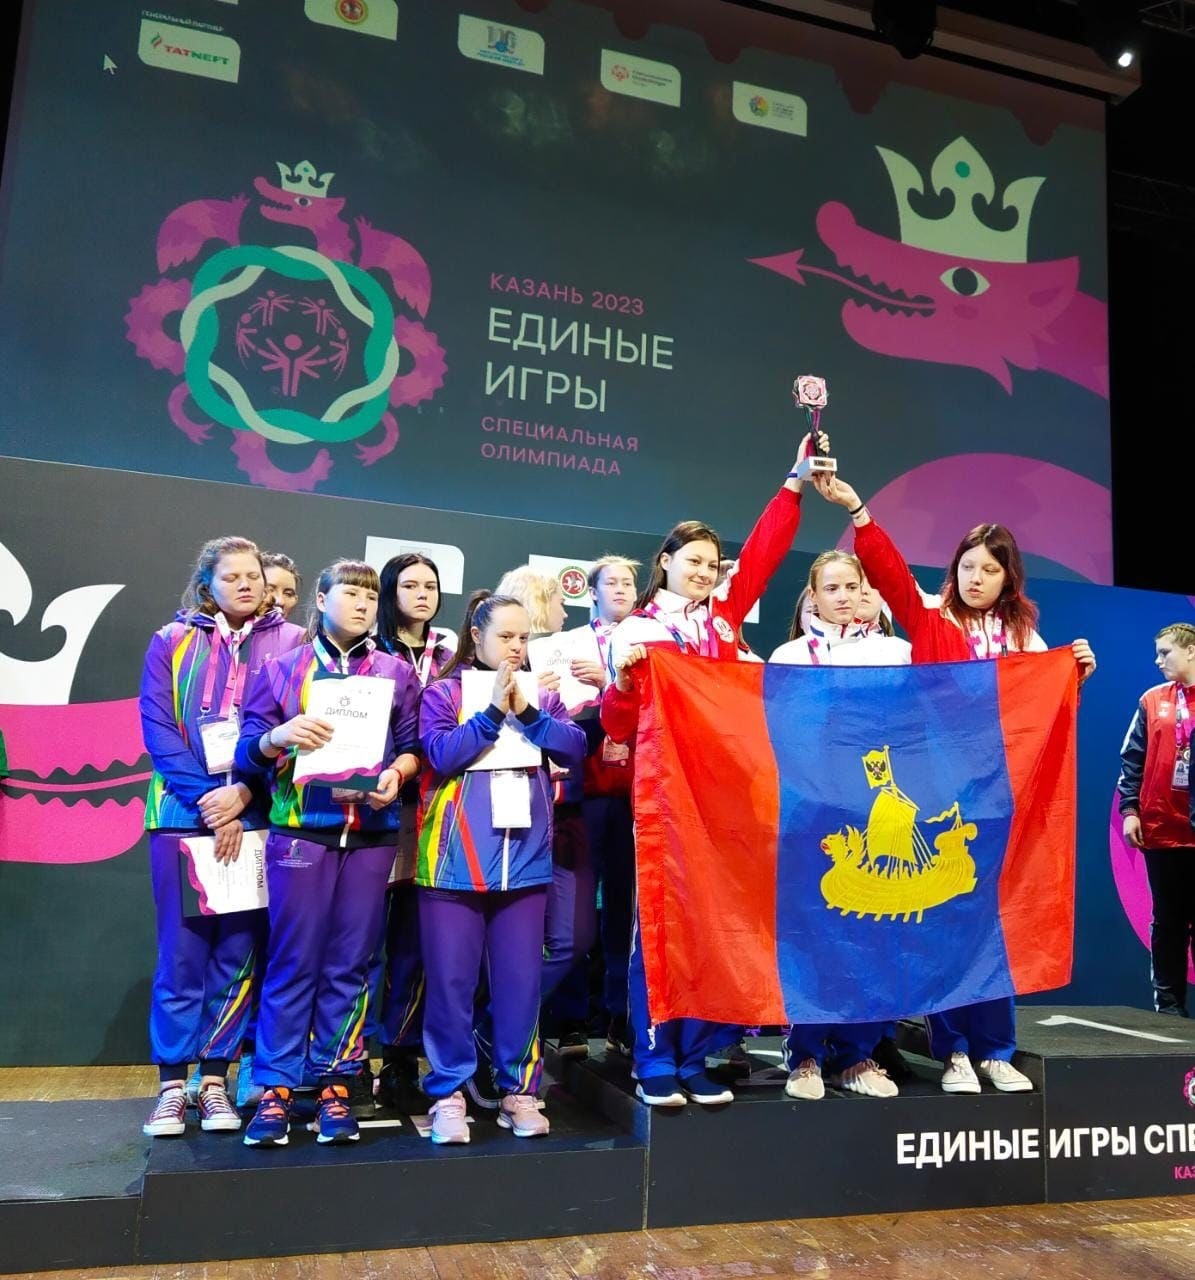 Особенные костромичи завоевали 26 медалей в Казани